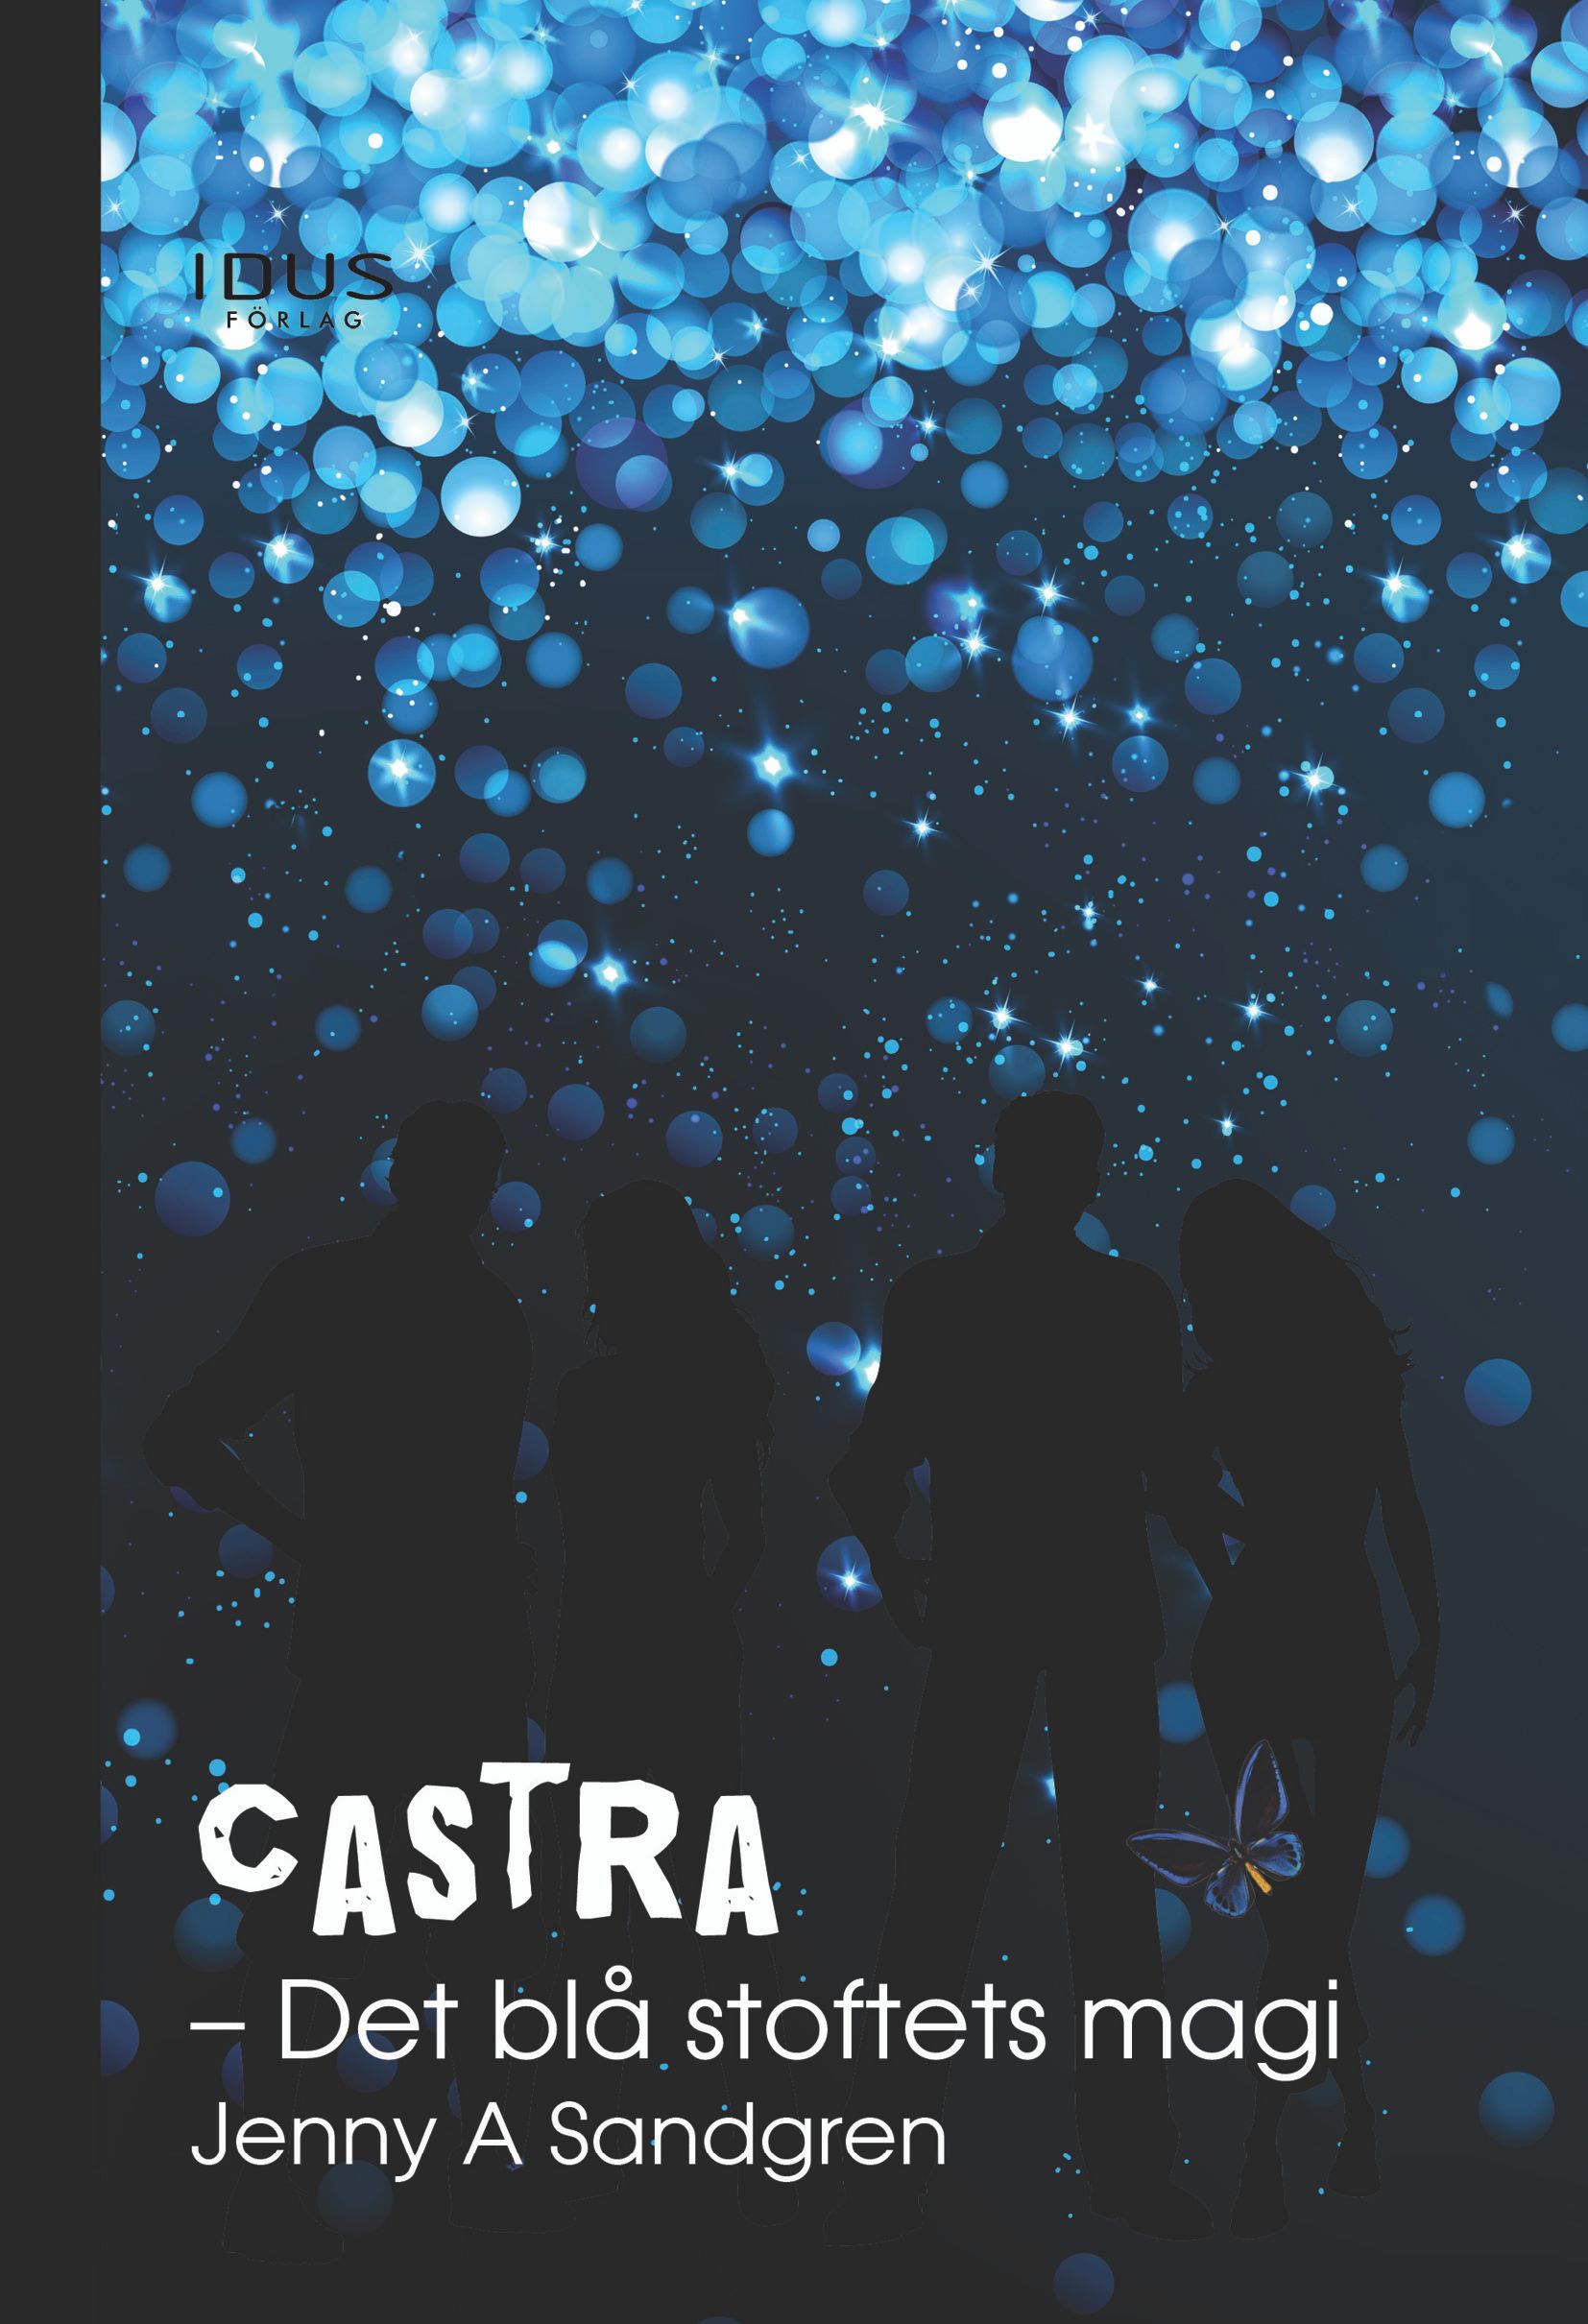 Castra. Det blå stoftets magi, e-bog af Jenny A Sandgren